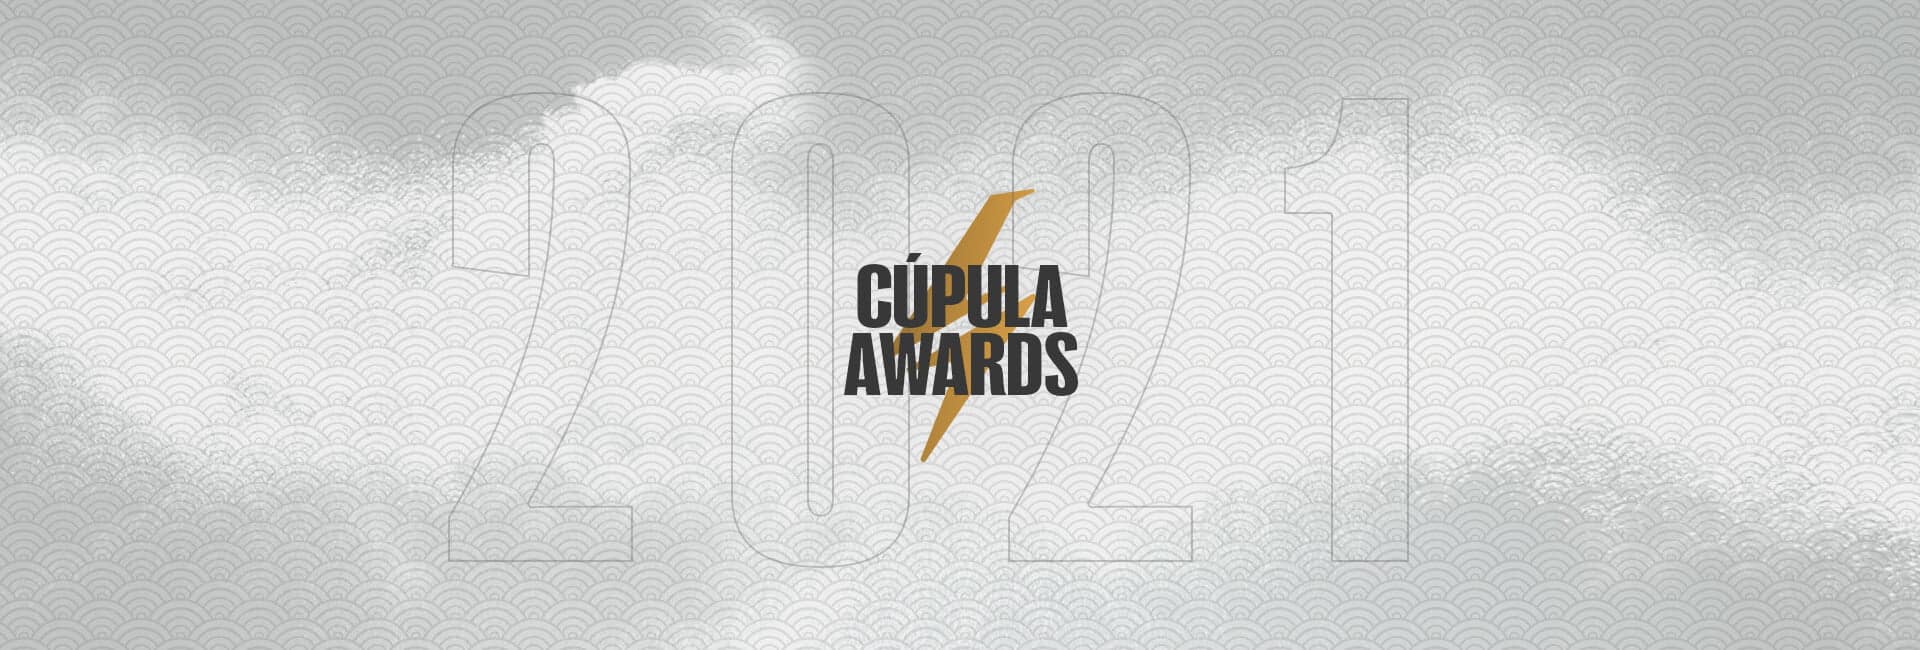 Cupula awards a premiação dos melhores animes do ano de 2020